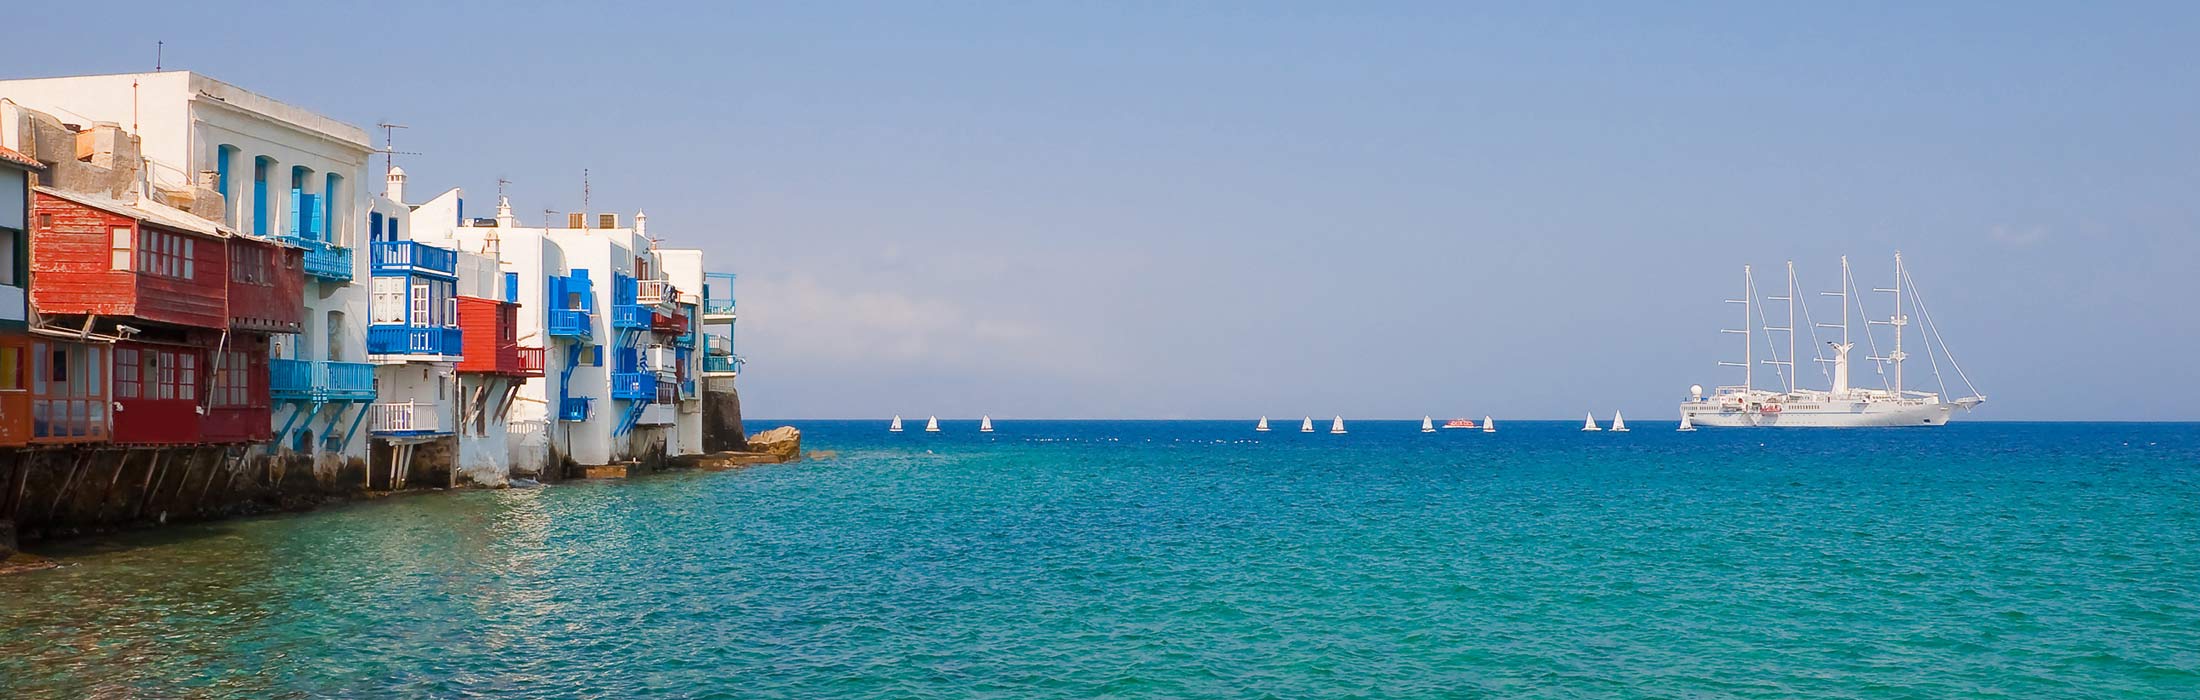 luxury yacht charter destinations mediterranean greece main slider 3